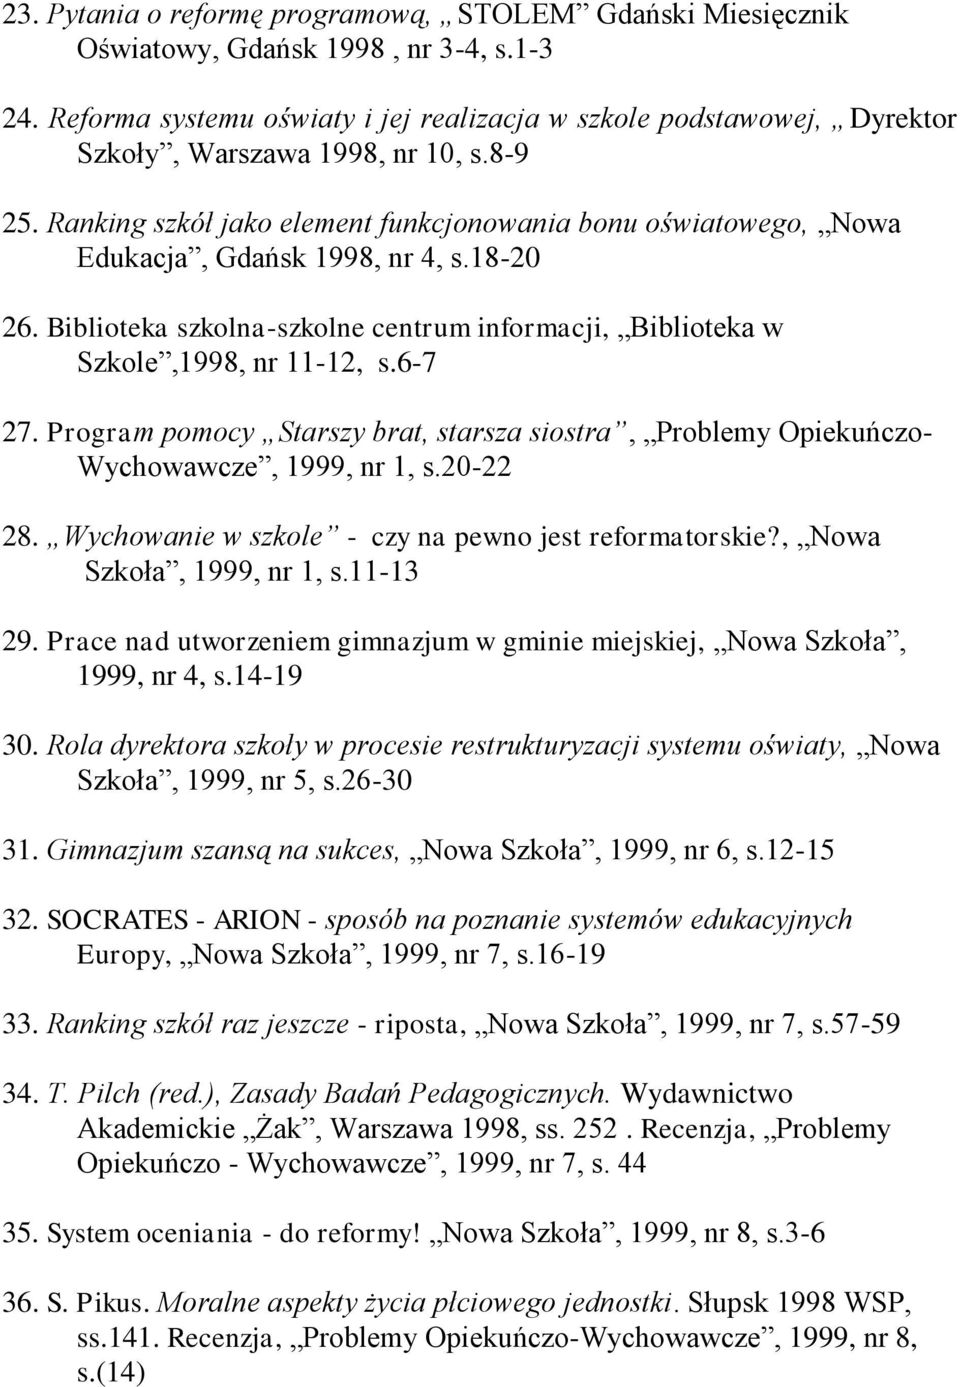 Ranking szkół jako element funkcjonowania bonu oświatowego, Nowa Edukacja, Gdańsk 1998, nr 4, s.18-20 26. Biblioteka szkolna-szkolne centrum informacji, Biblioteka w Szkole,1998, nr 11-12, s.6-7 27.